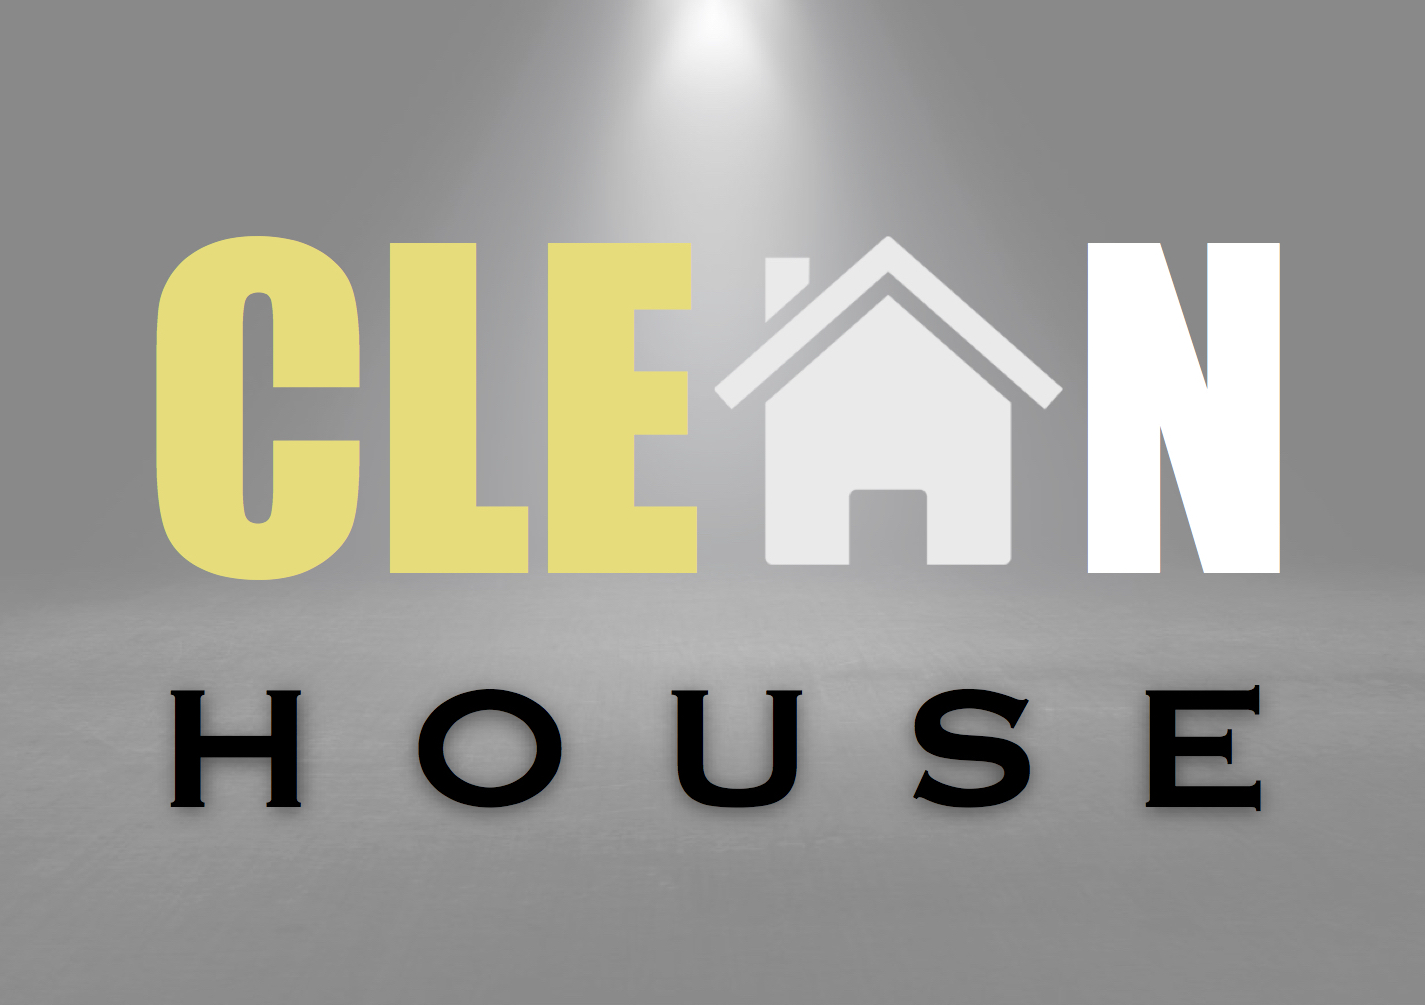 CLEAN HOUSE logo final 4-5-18.jpg